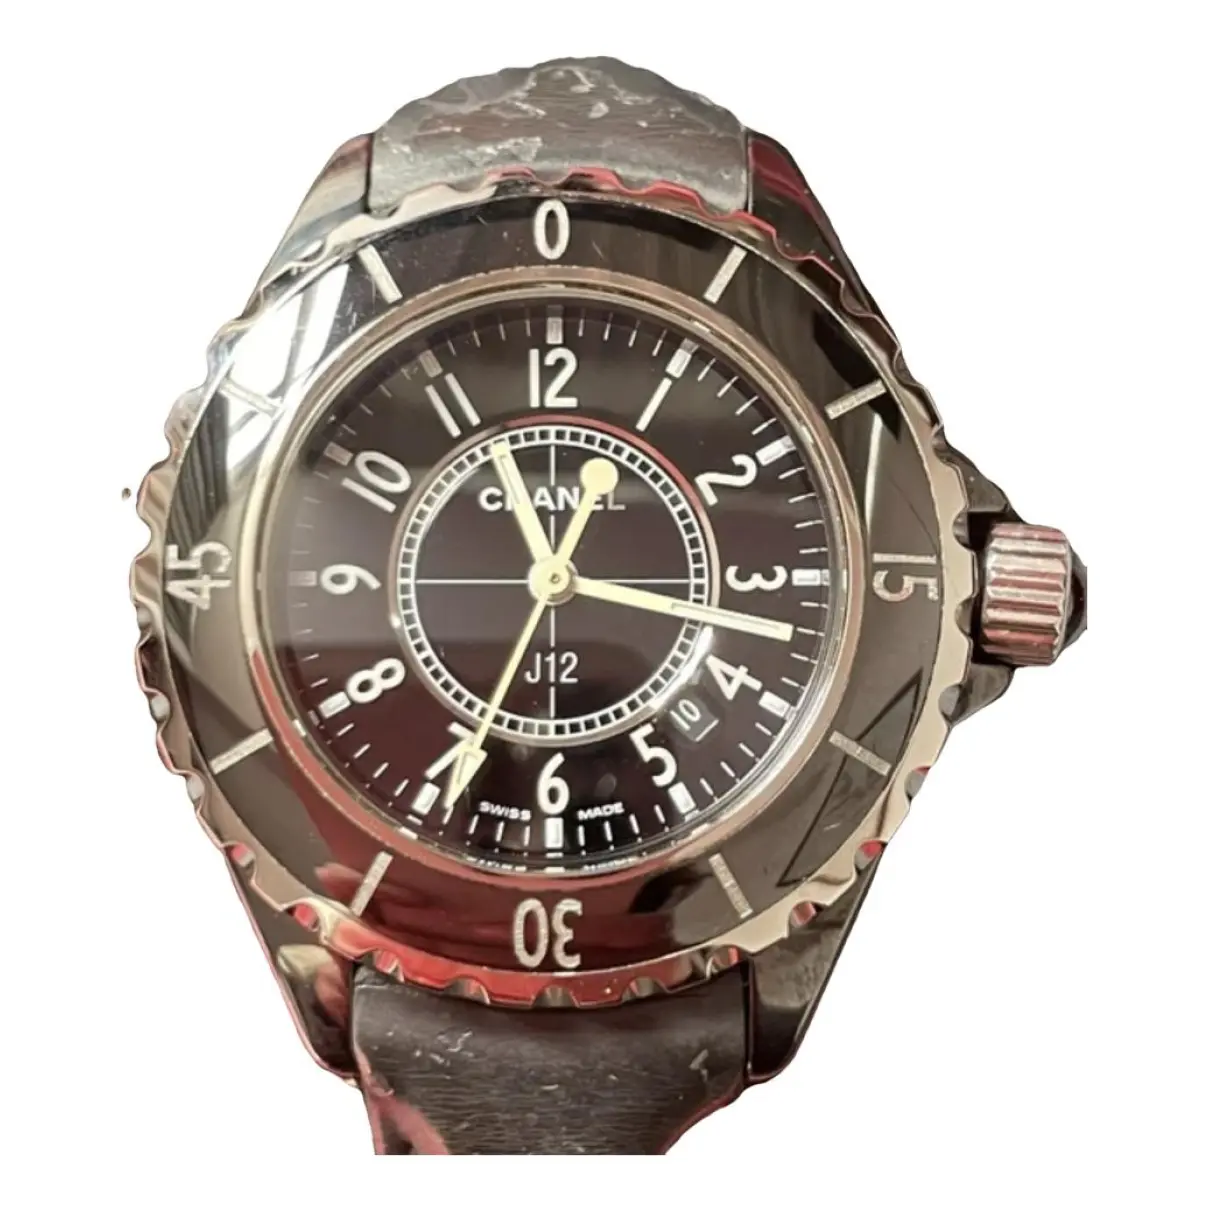 J12 Quartz ceramic watch